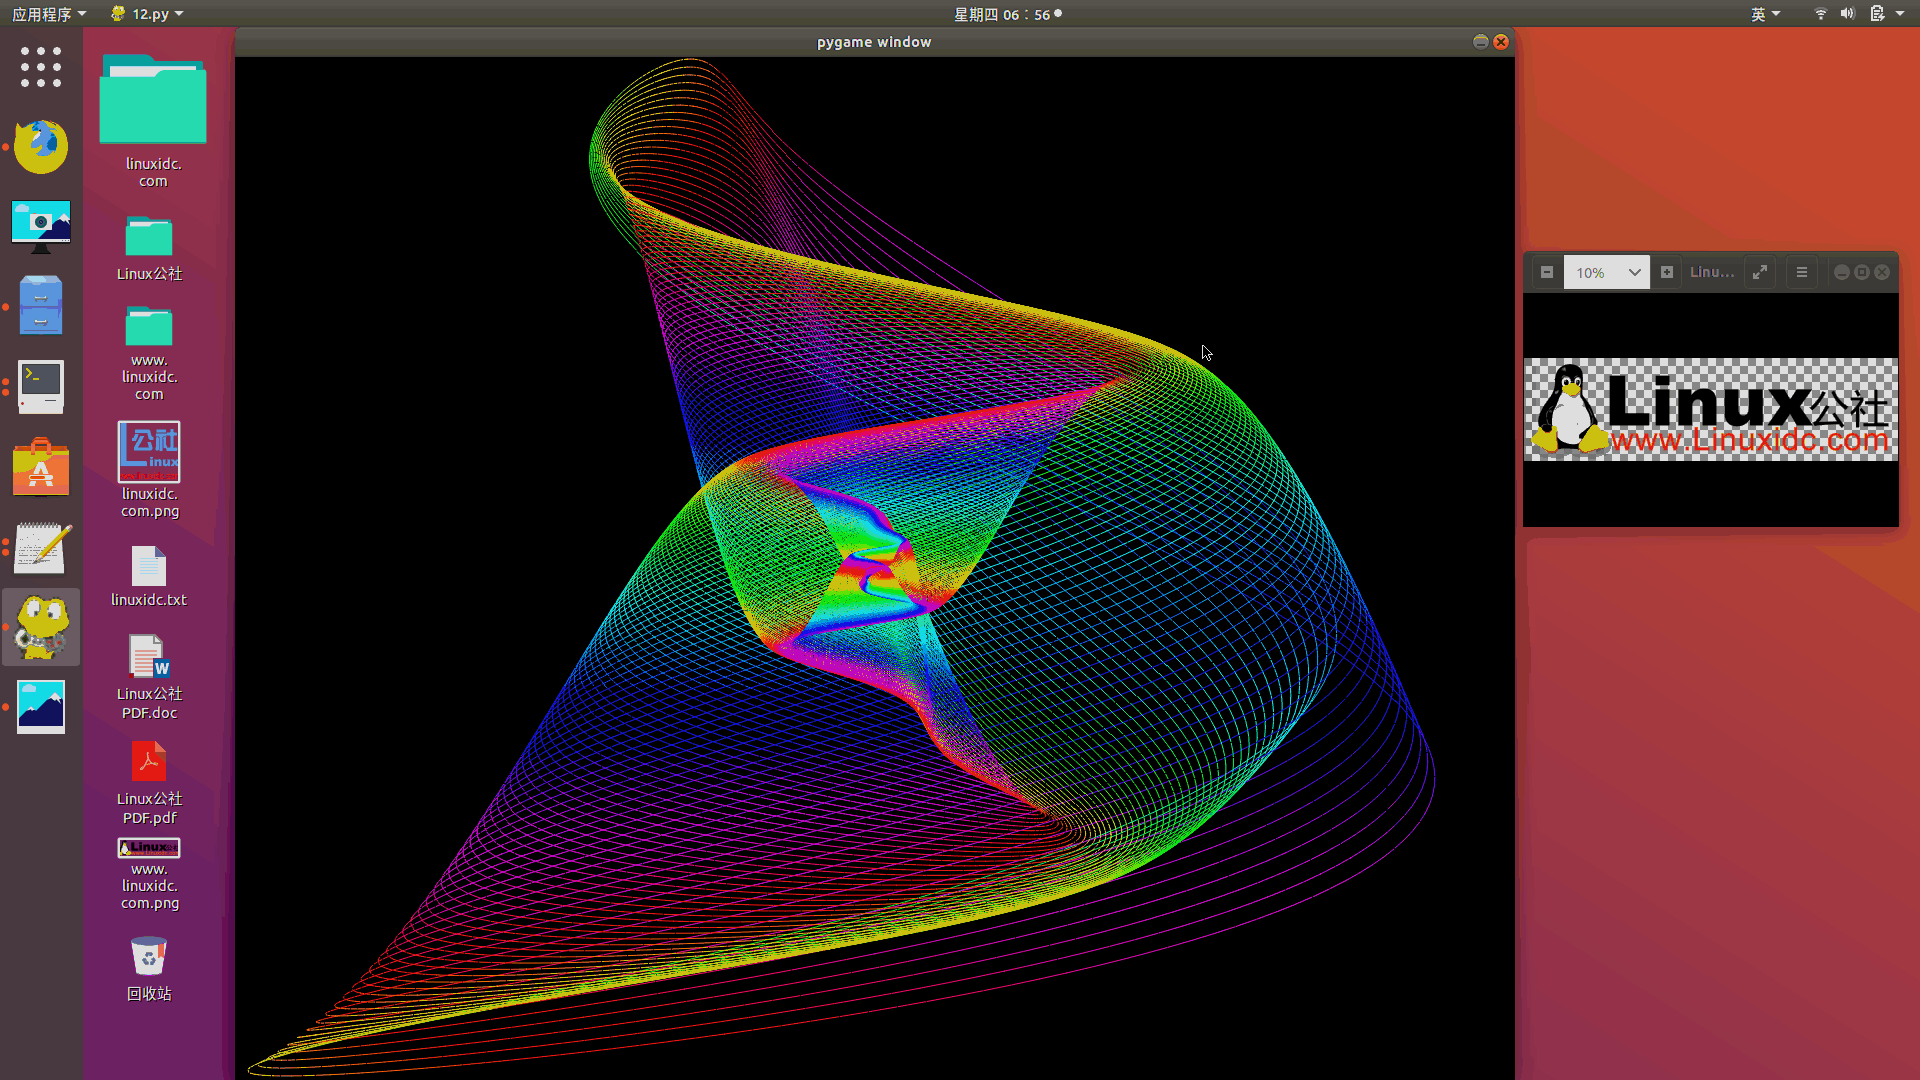 漂亮的频谱谐波图必备 Python + Pygame漂亮的频谱谐波图必备 Python + Pygame